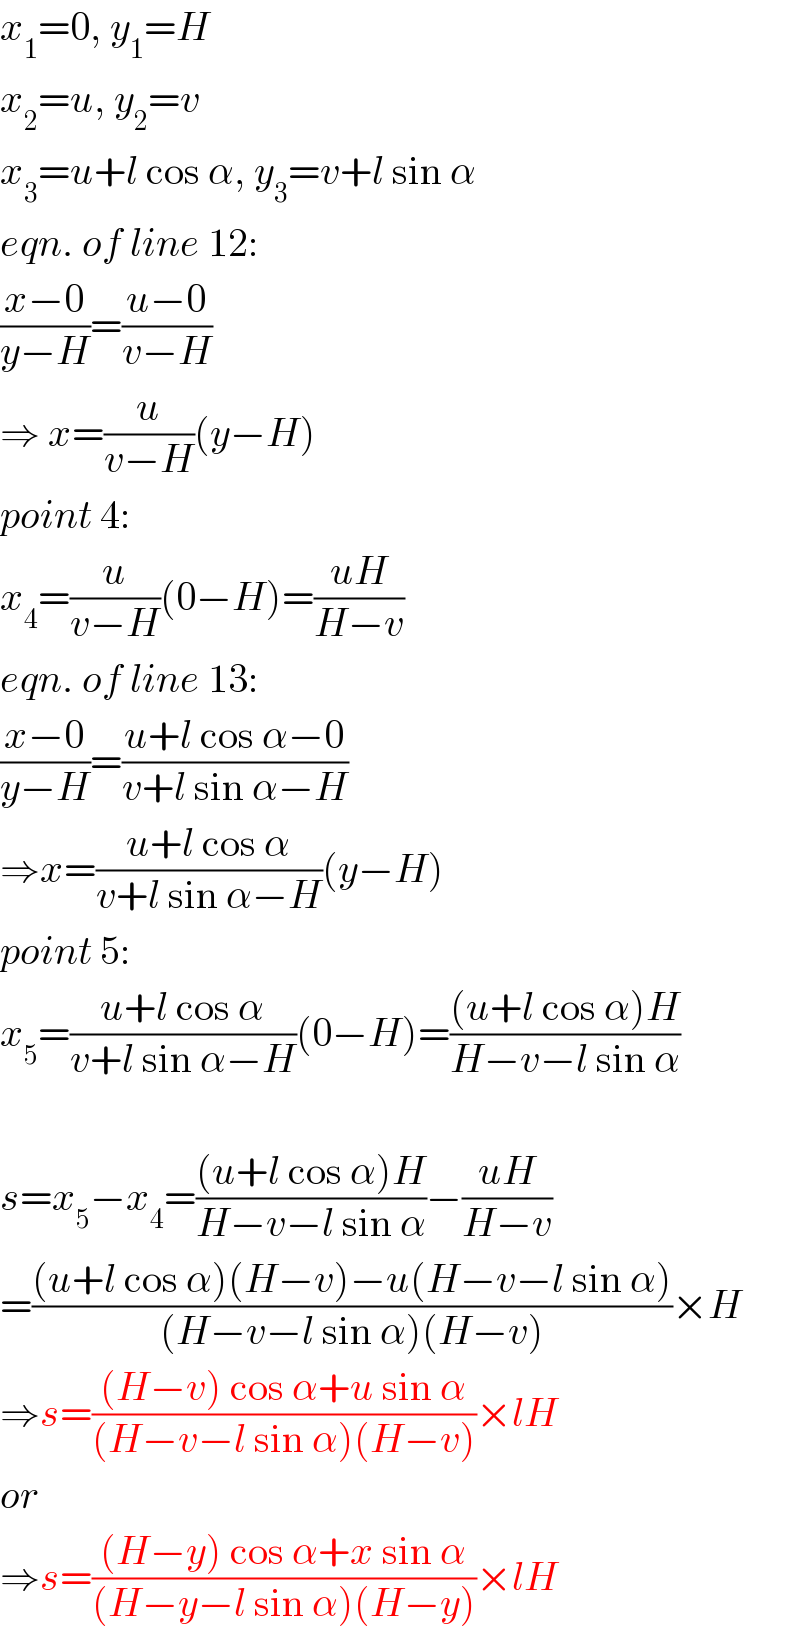 x_1 =0, y_1 =H  x_2 =u, y_2 =v  x_3 =u+l cos α, y_3 =v+l sin α  eqn. of line 12:  ((x−0)/(y−H))=((u−0)/(v−H))  ⇒ x=(u/(v−H))(y−H)  point 4:  x_4 =(u/(v−H))(0−H)=((uH)/(H−v))  eqn. of line 13:  ((x−0)/(y−H))=((u+l cos α−0)/(v+l sin α−H))  ⇒x=((u+l cos α)/(v+l sin α−H))(y−H)  point 5:  x_5 =((u+l cos α)/(v+l sin α−H))(0−H)=(((u+l cos α)H)/(H−v−l sin α))    s=x_5 −x_4 =(((u+l cos α)H)/(H−v−l sin α))−((uH)/(H−v))  =(((u+l cos α)(H−v)−u(H−v−l sin α))/((H−v−l sin α)(H−v)))×H  ⇒s=(((H−v) cos α+u sin α)/((H−v−l sin α)(H−v)))×lH  or  ⇒s=(((H−y) cos α+x sin α)/((H−y−l sin α)(H−y)))×lH  